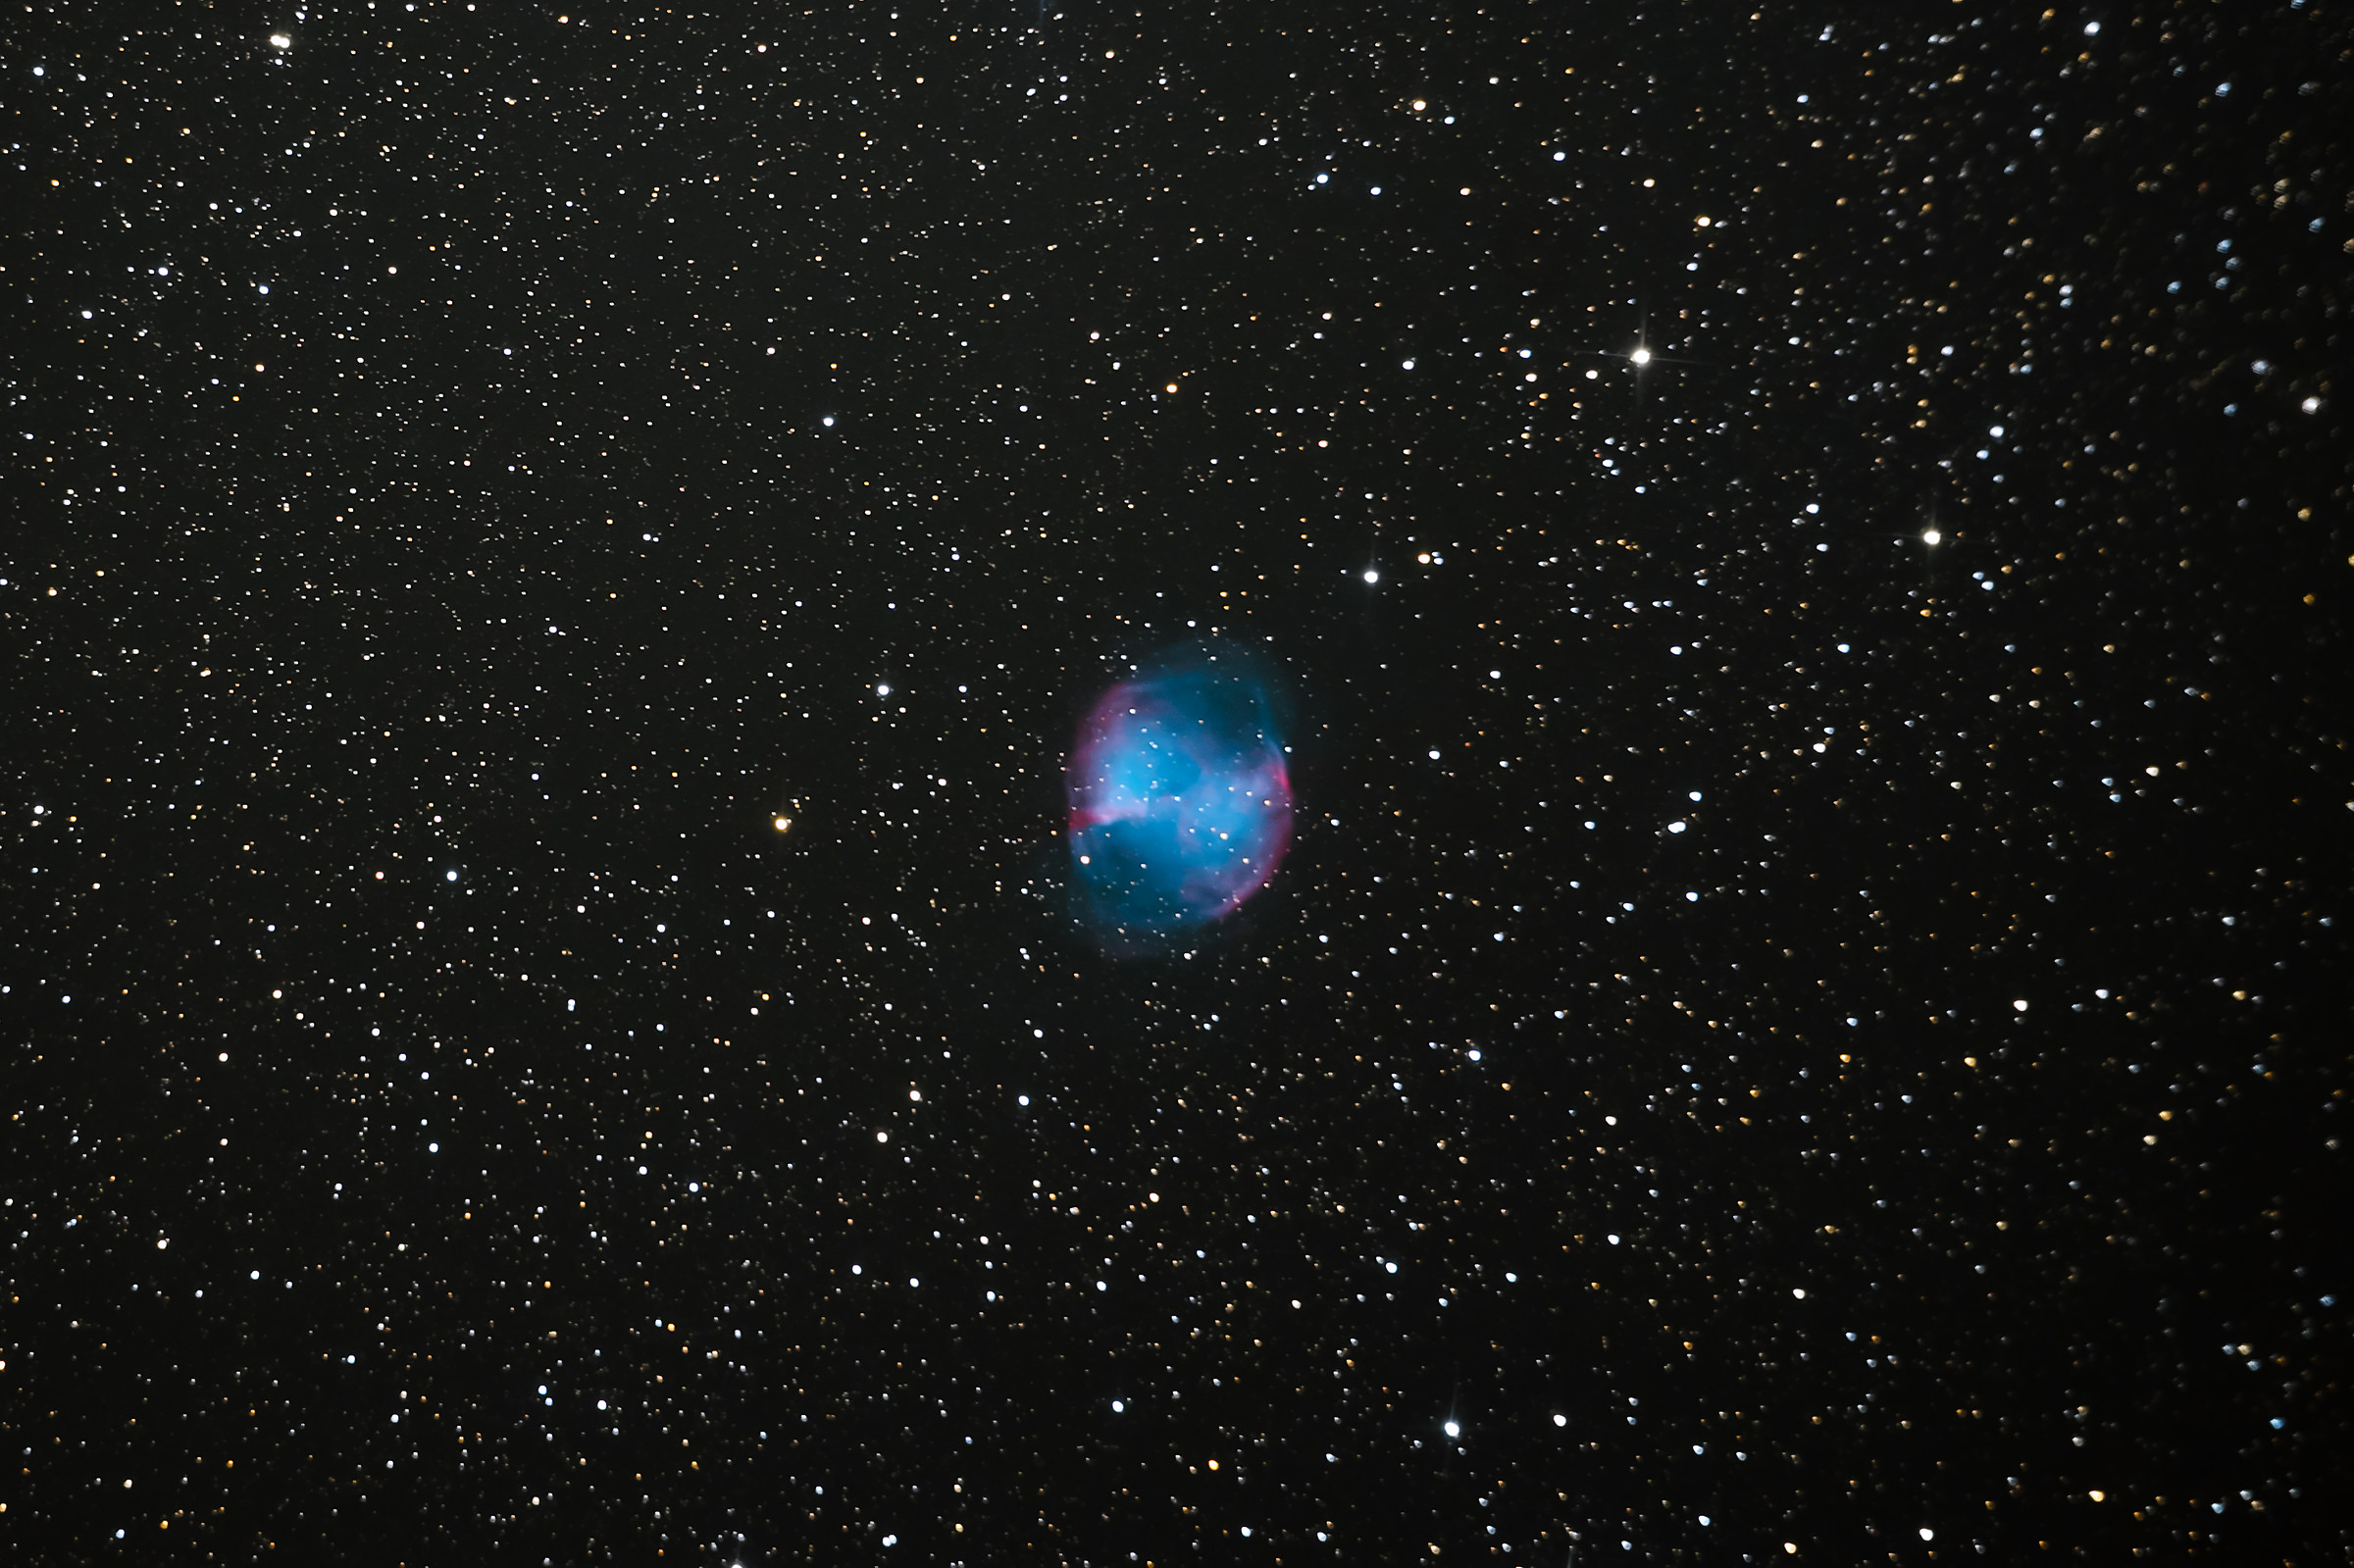 The Dumbbell Nebula M27...